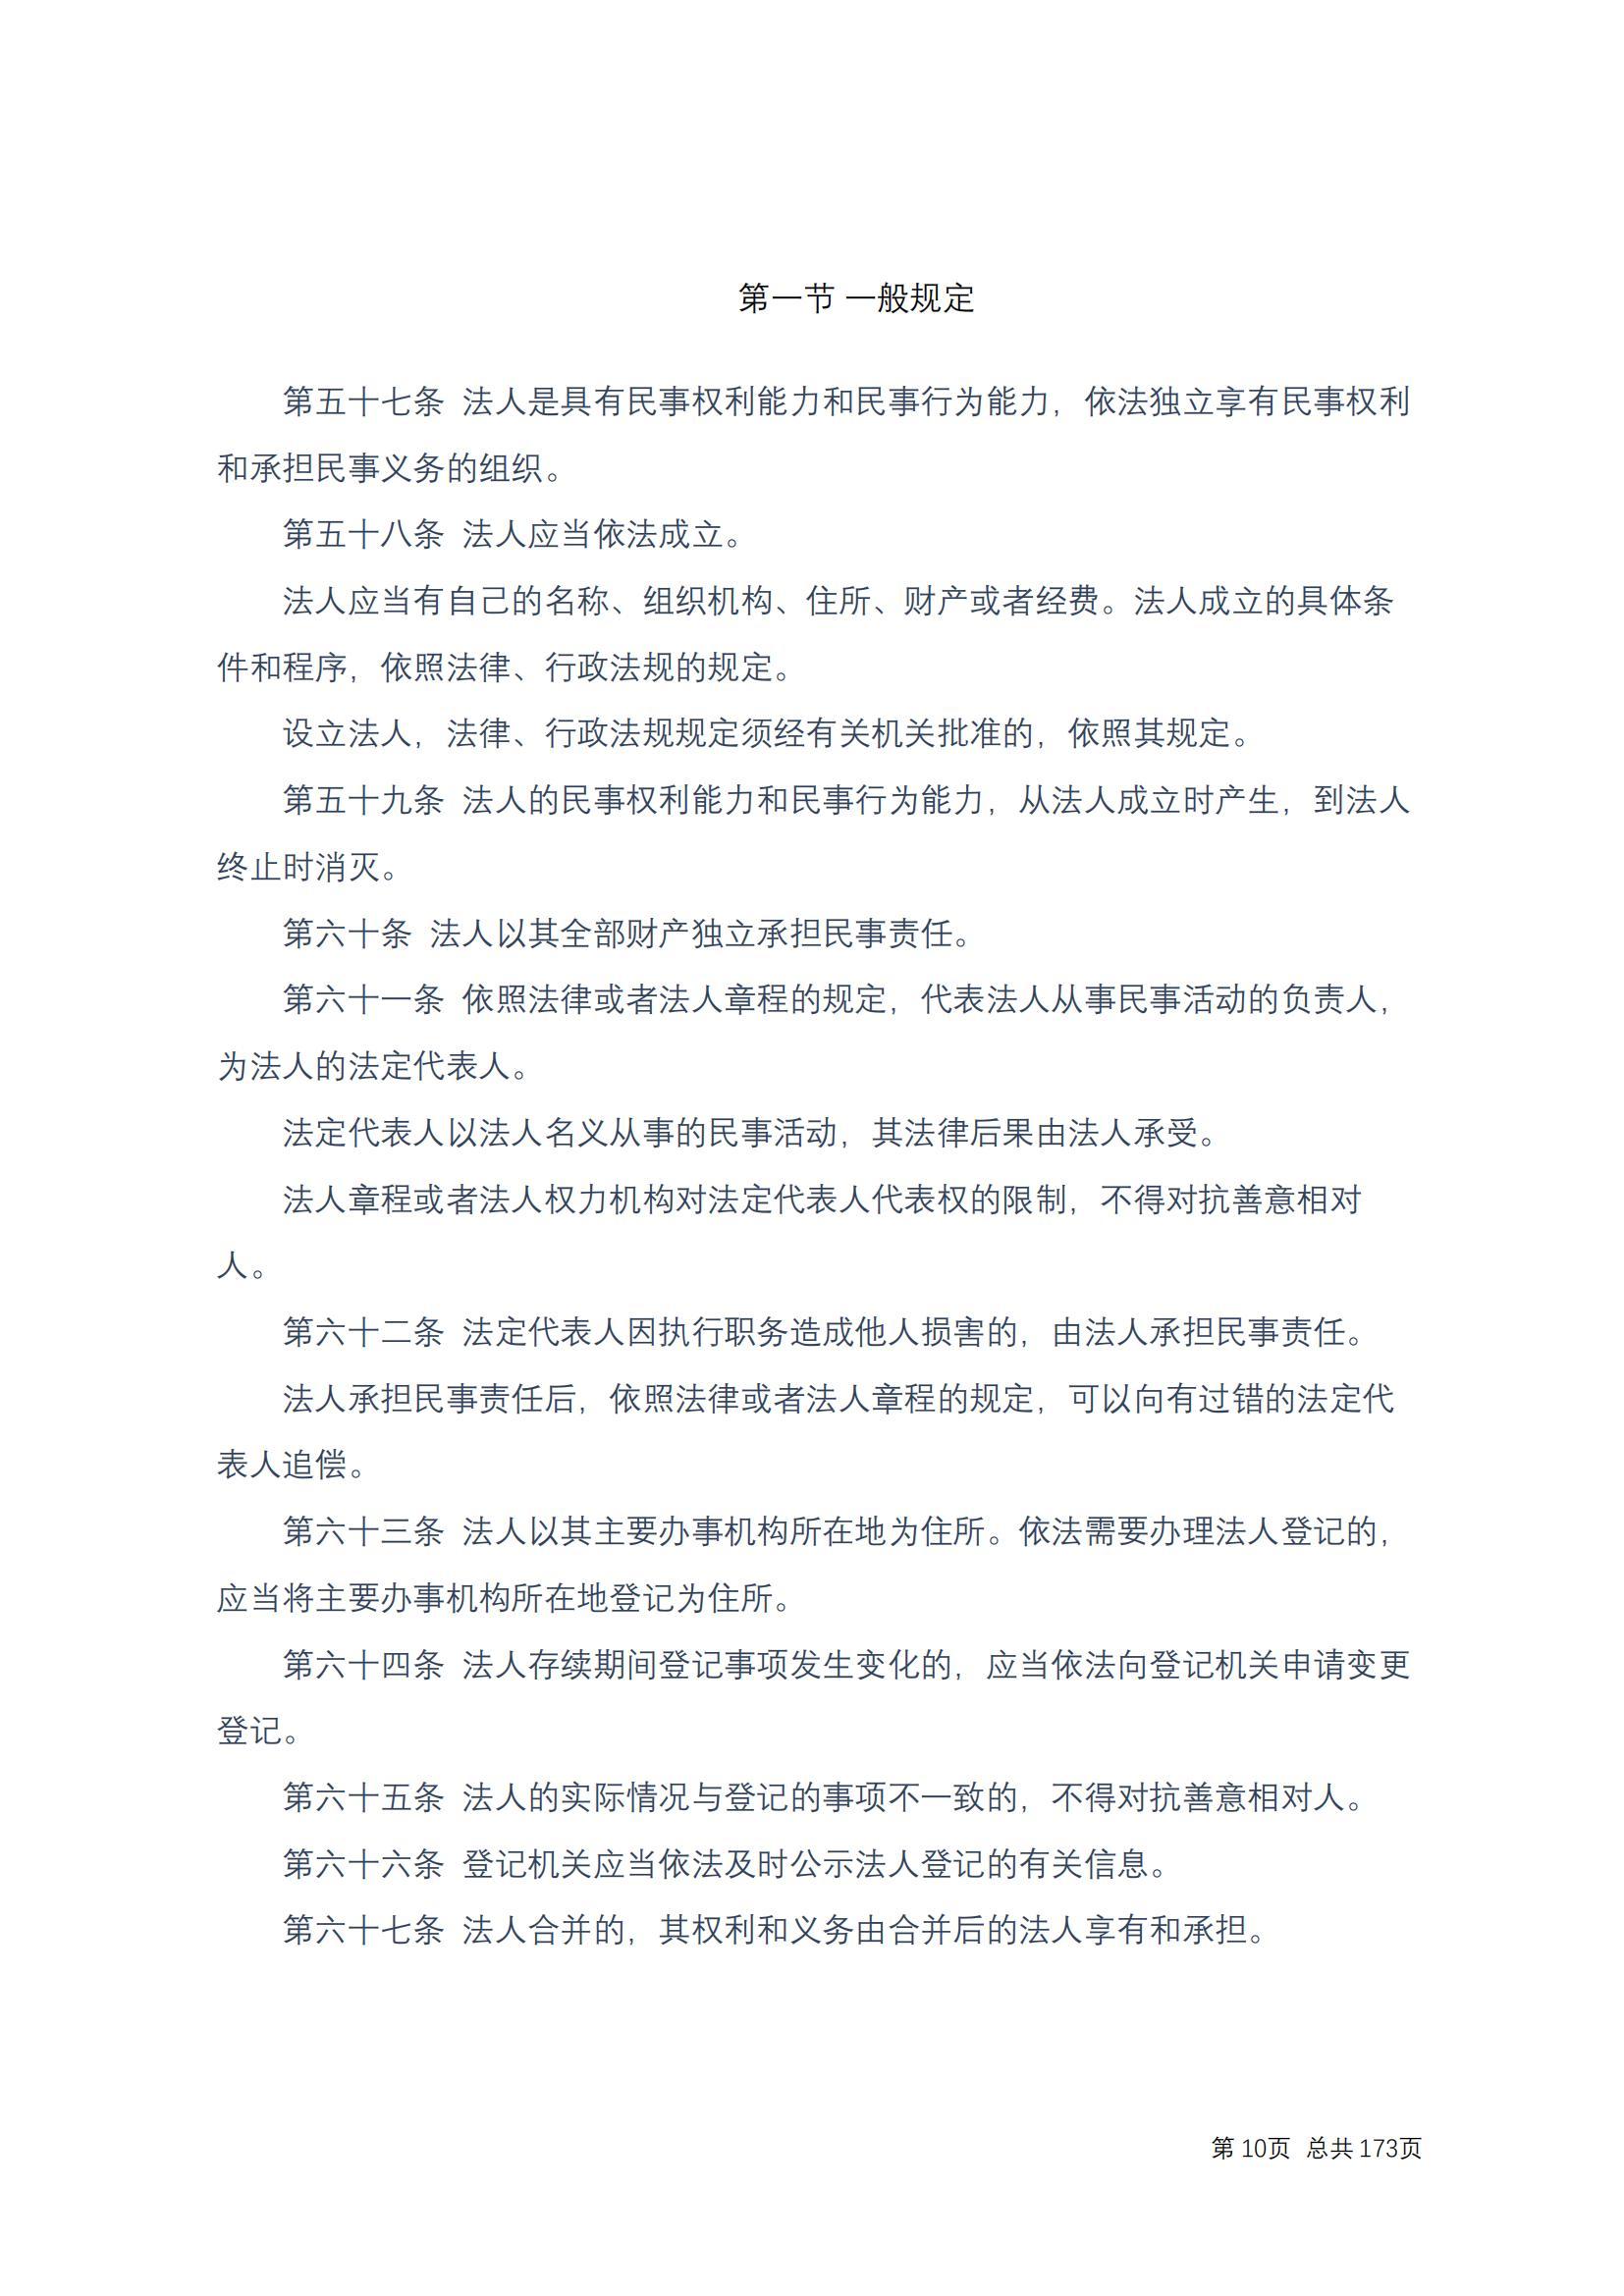 中华人民共和国民法典 修改过_09